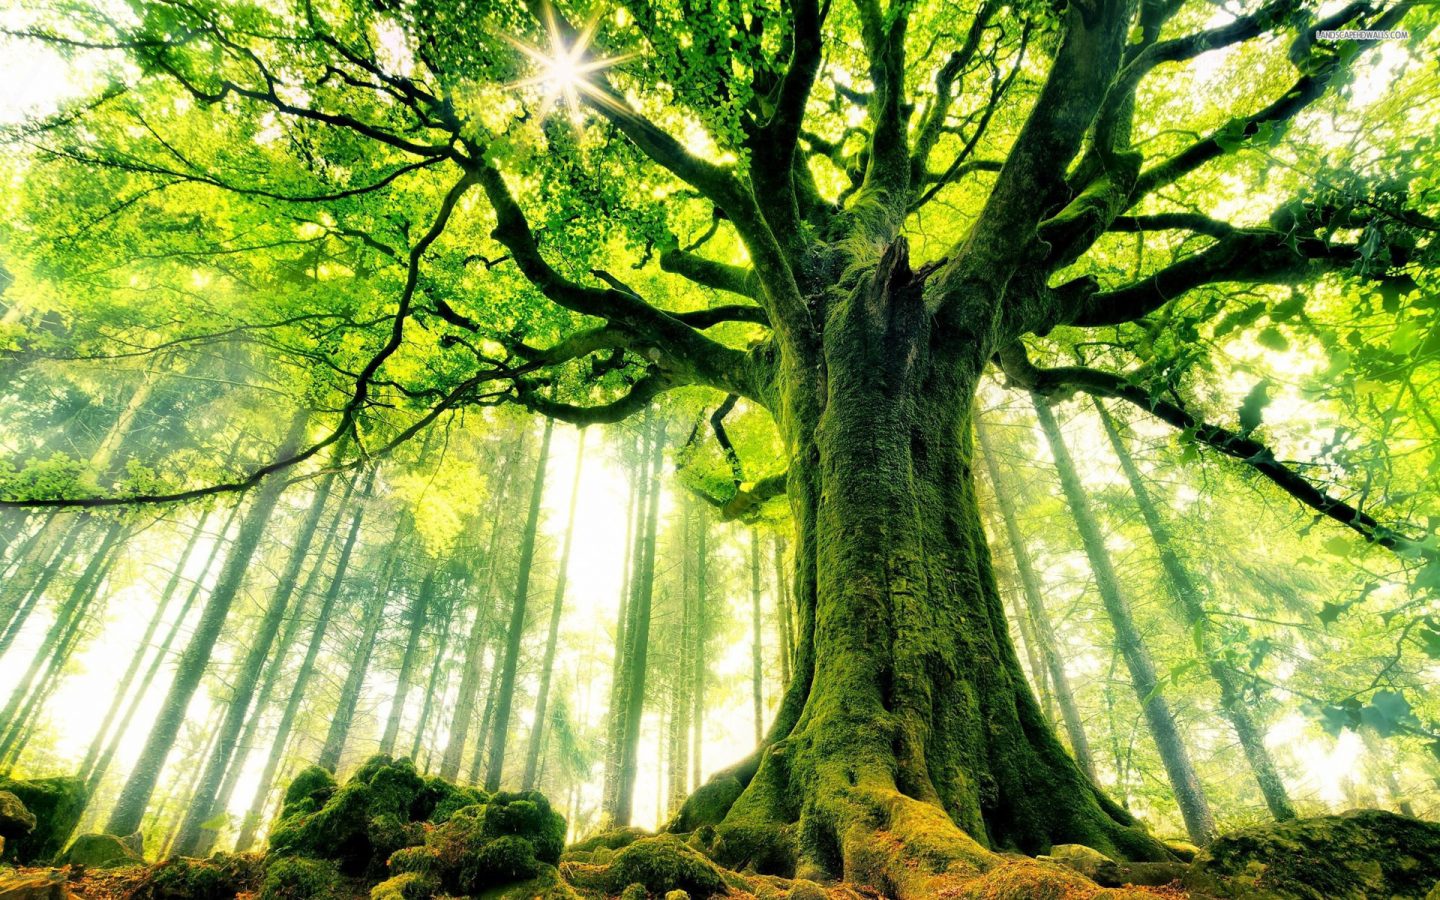 عندما يهدم قانون « البقاء ل الاصلح » ، الاشجار تثبت وجود قانون اخر ل الحياة !